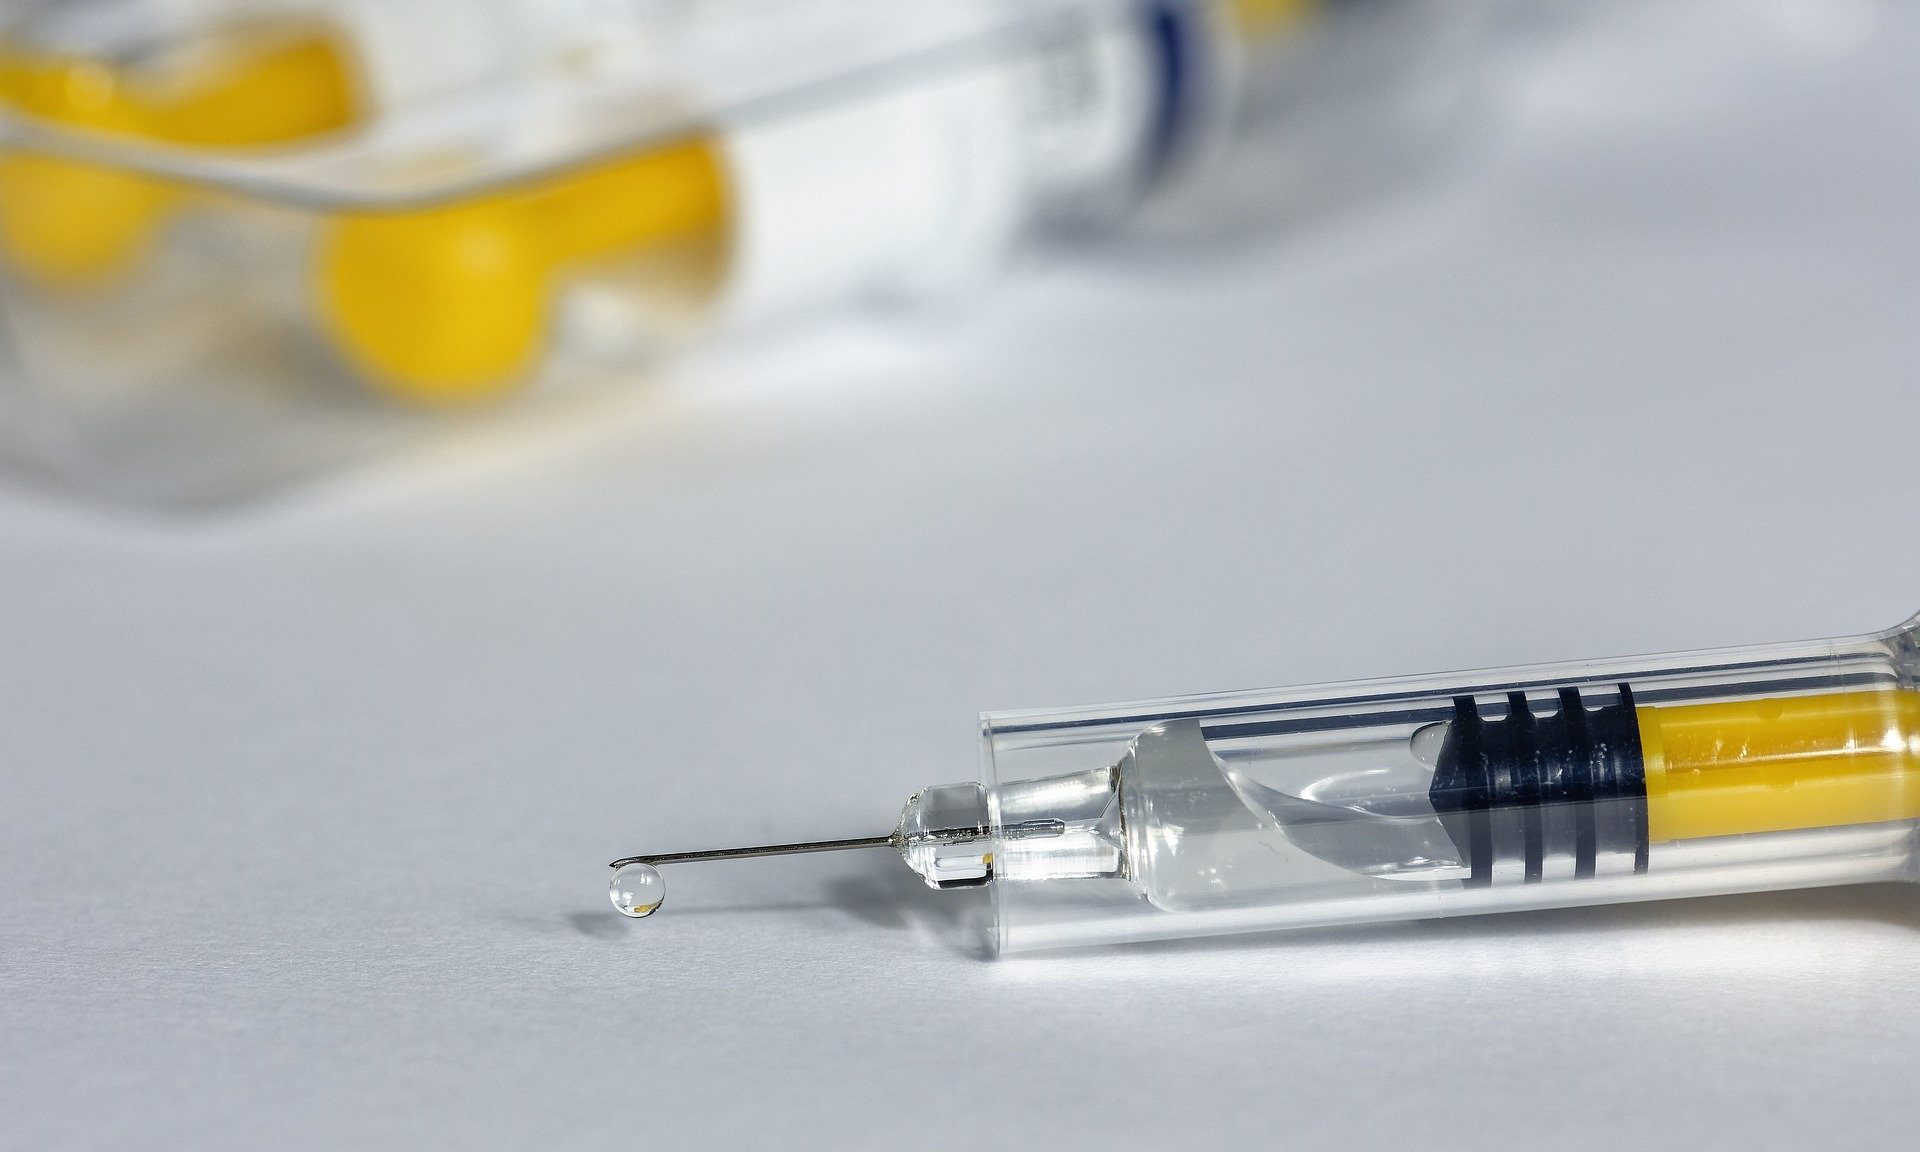 Грипп отдельно, Covid-19 отдельно: Роспотребнадзор Кузбасса прояснил слухи о подмене вакцин